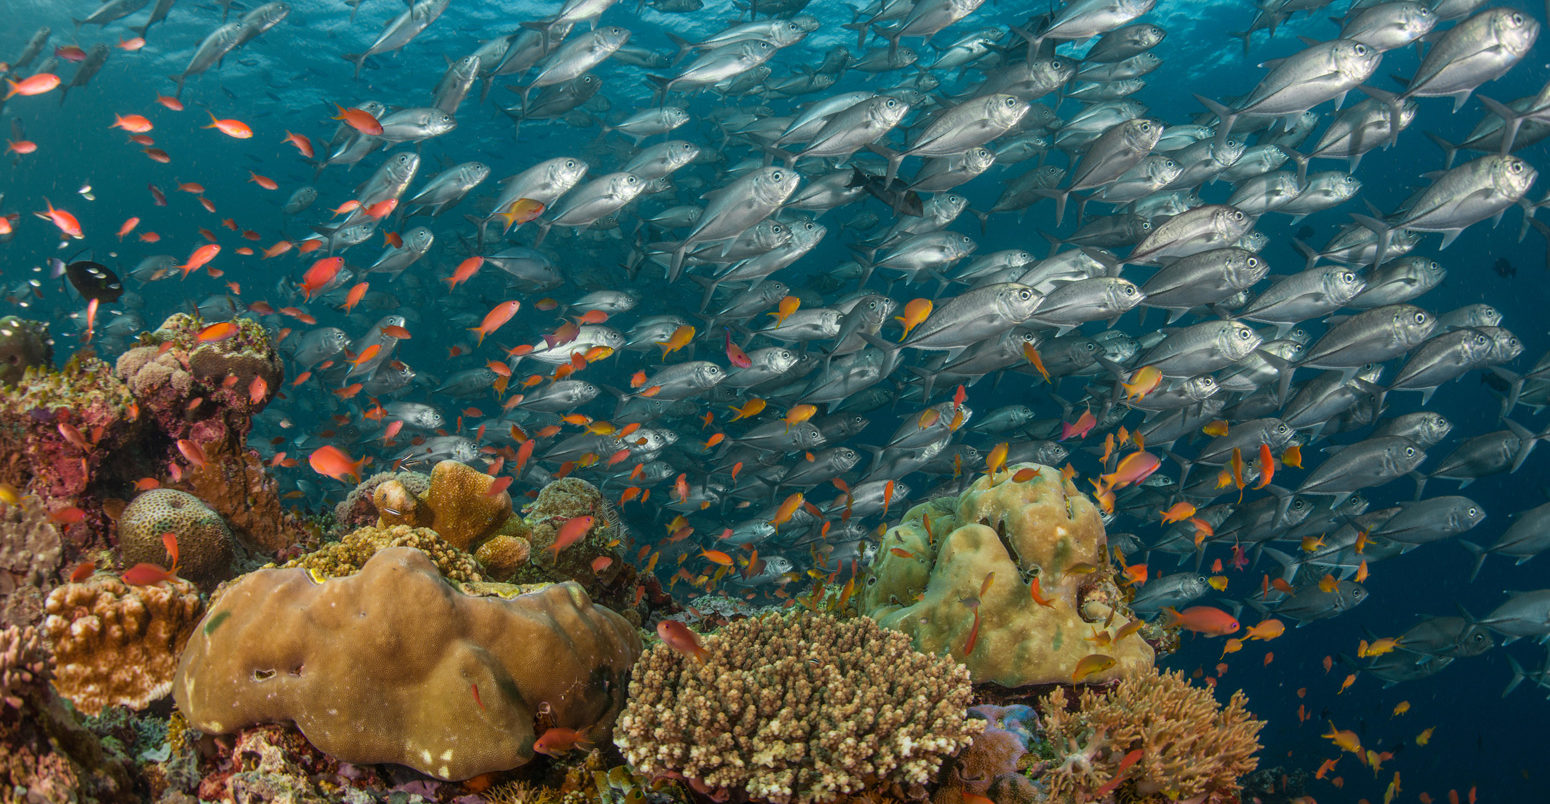 学院的大眼千斤顶、珊瑚礁和橙色anthias鱼,沙巴,马来西亚婆罗洲。信贷:基督教装载机除股票的照片